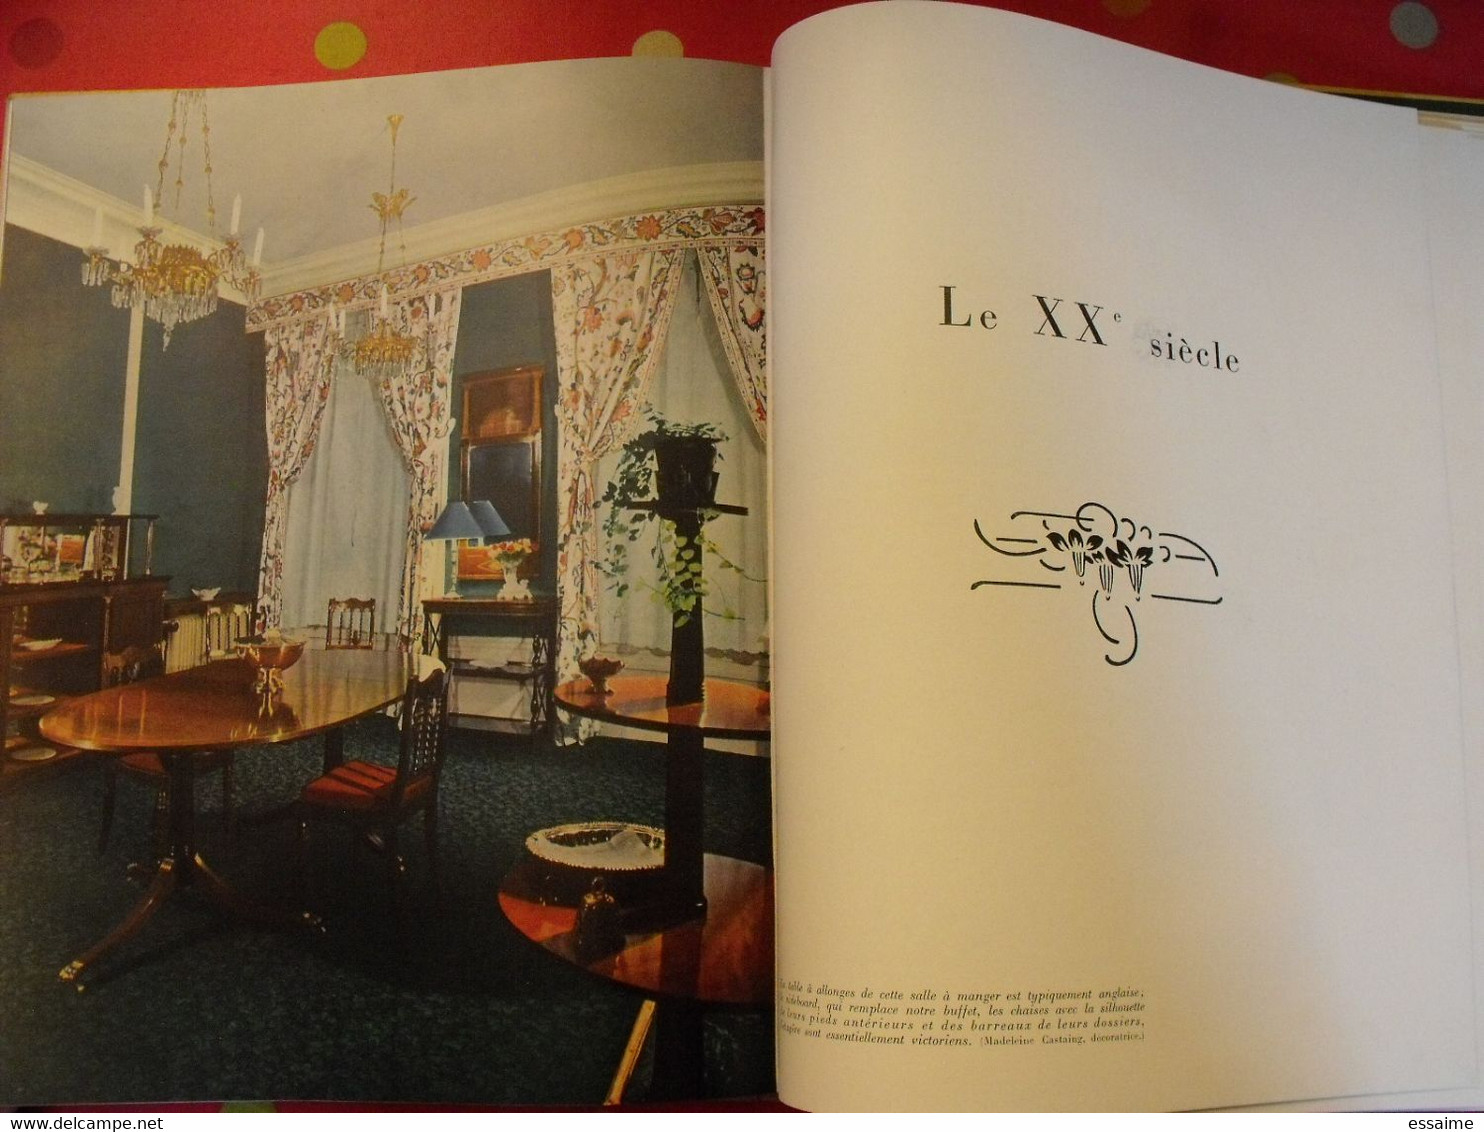 styles de France "meubles et ensembles". plaisir de france vers 1950-60. très illustré. beau livre avec emboitage